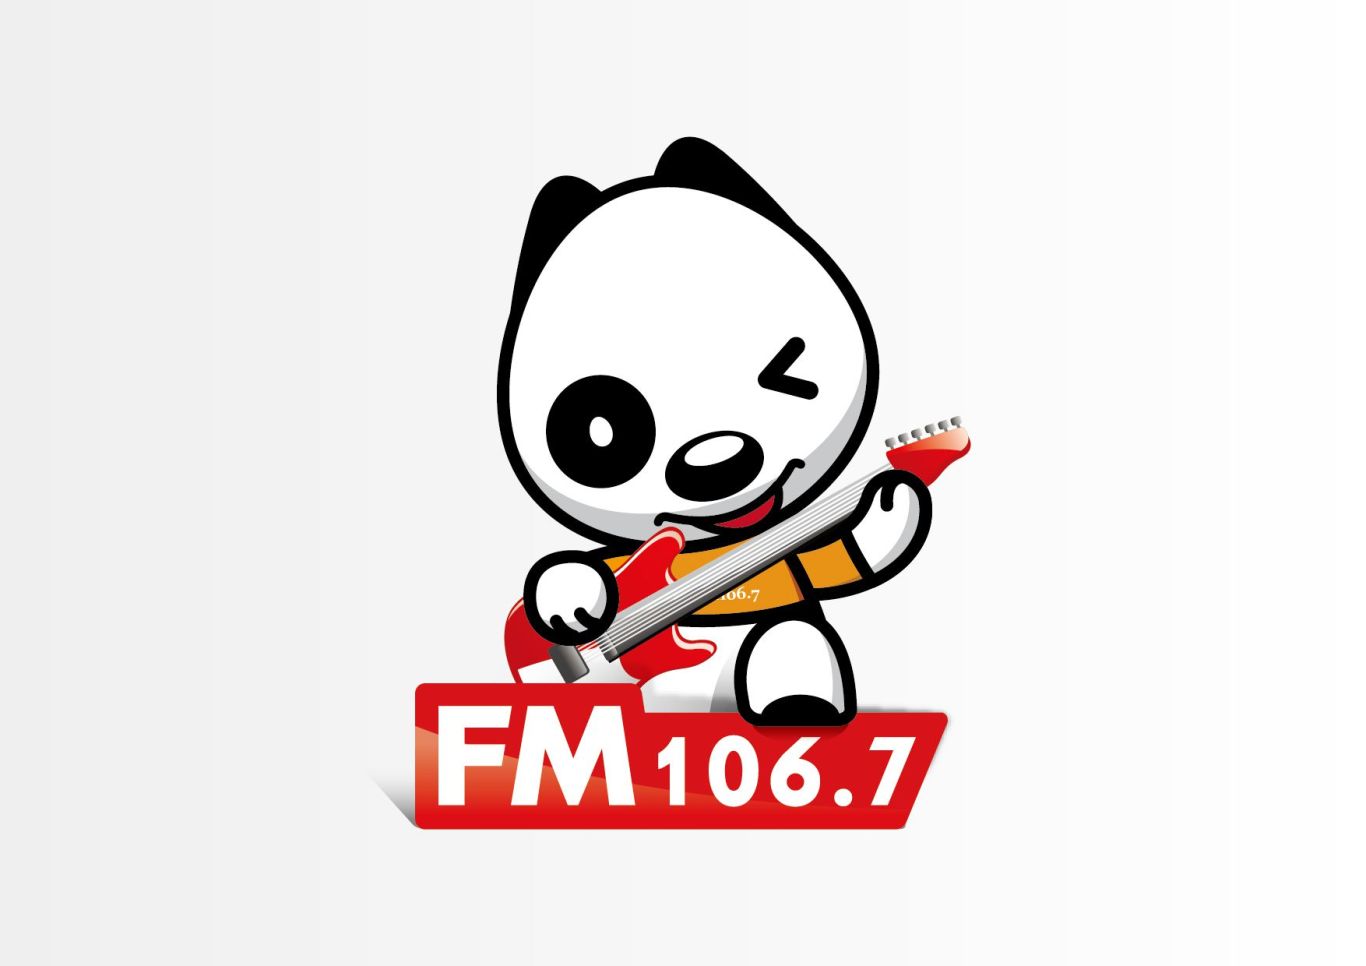 吉祥物IP设计-FM106.7音乐广播图0